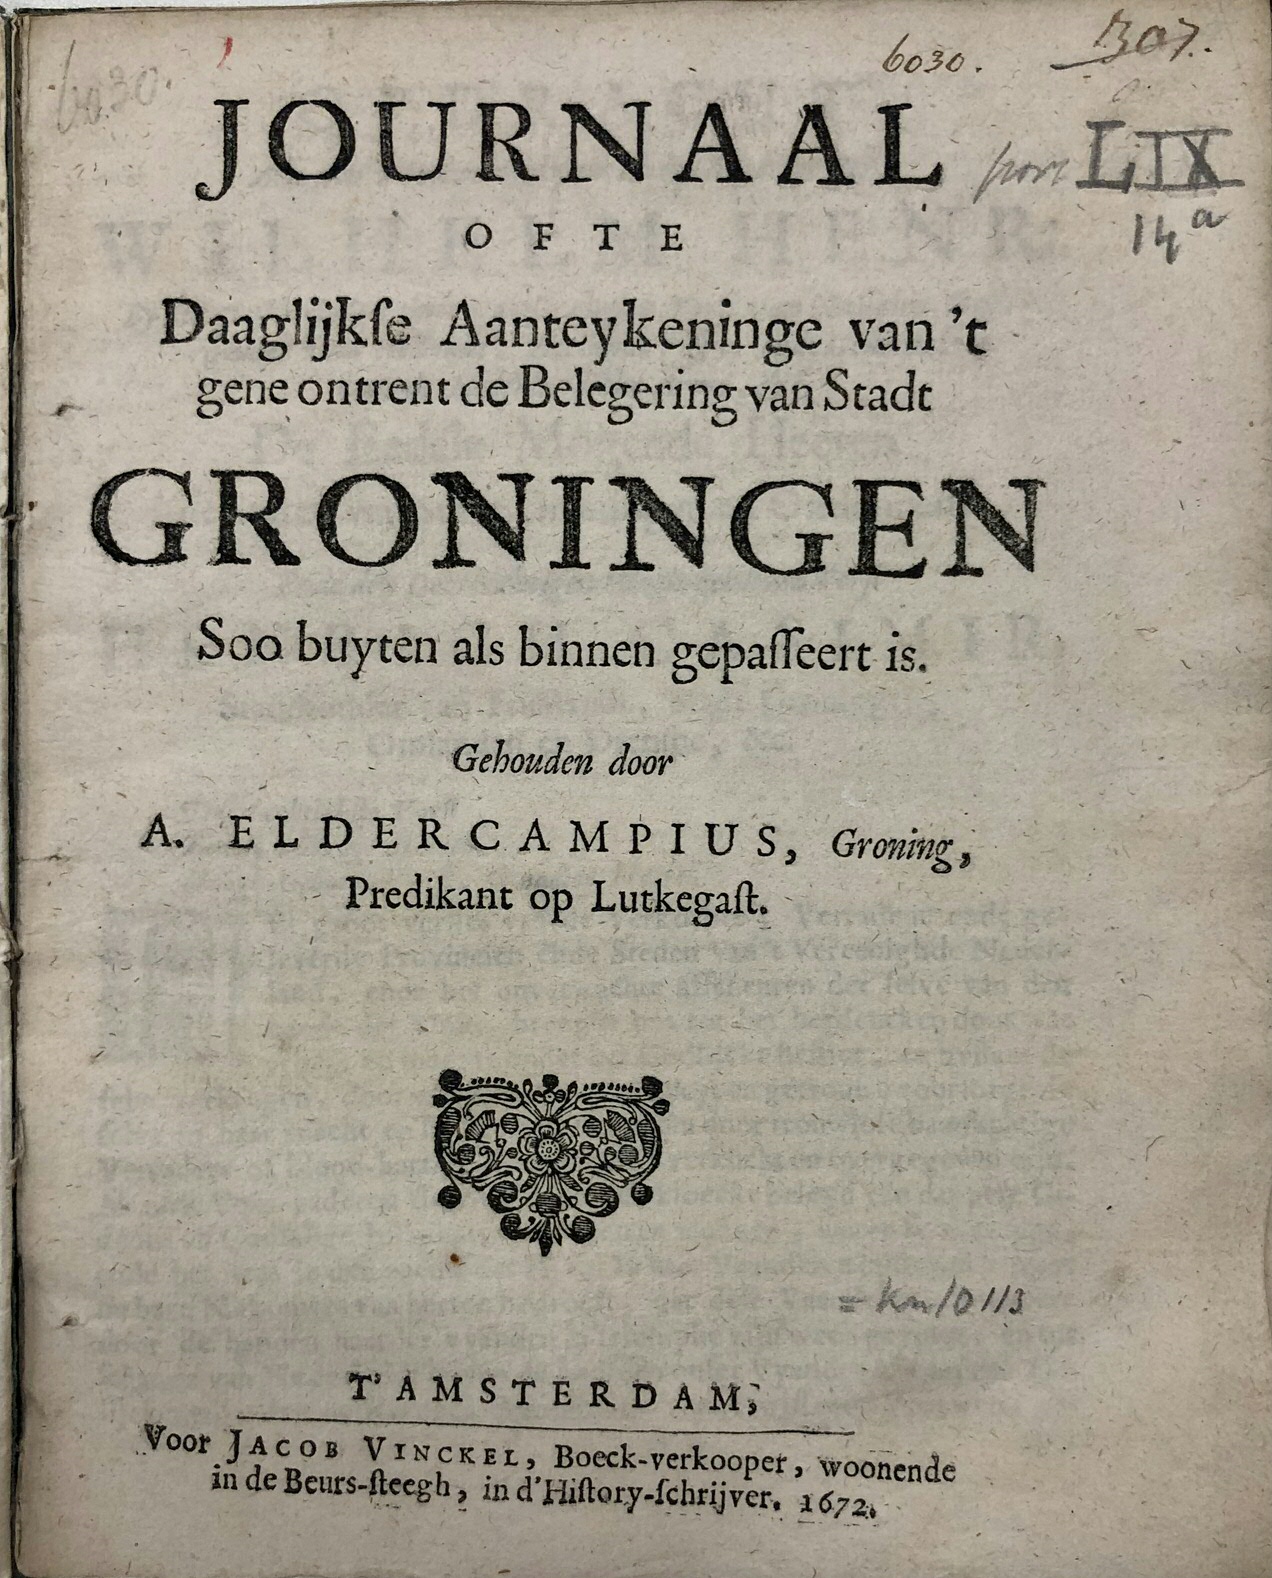 Ill. 3: Andreas Eldercamp, “Journaal ofte Daaglijkse Aanteykeninge van ’t gene ontrent de Belegering van Stadt Groningen Soo buyten als binnen gepasseert is” (Amsterdam: Jacob Vinckel, 1672). UB Groningen, PBG 2827